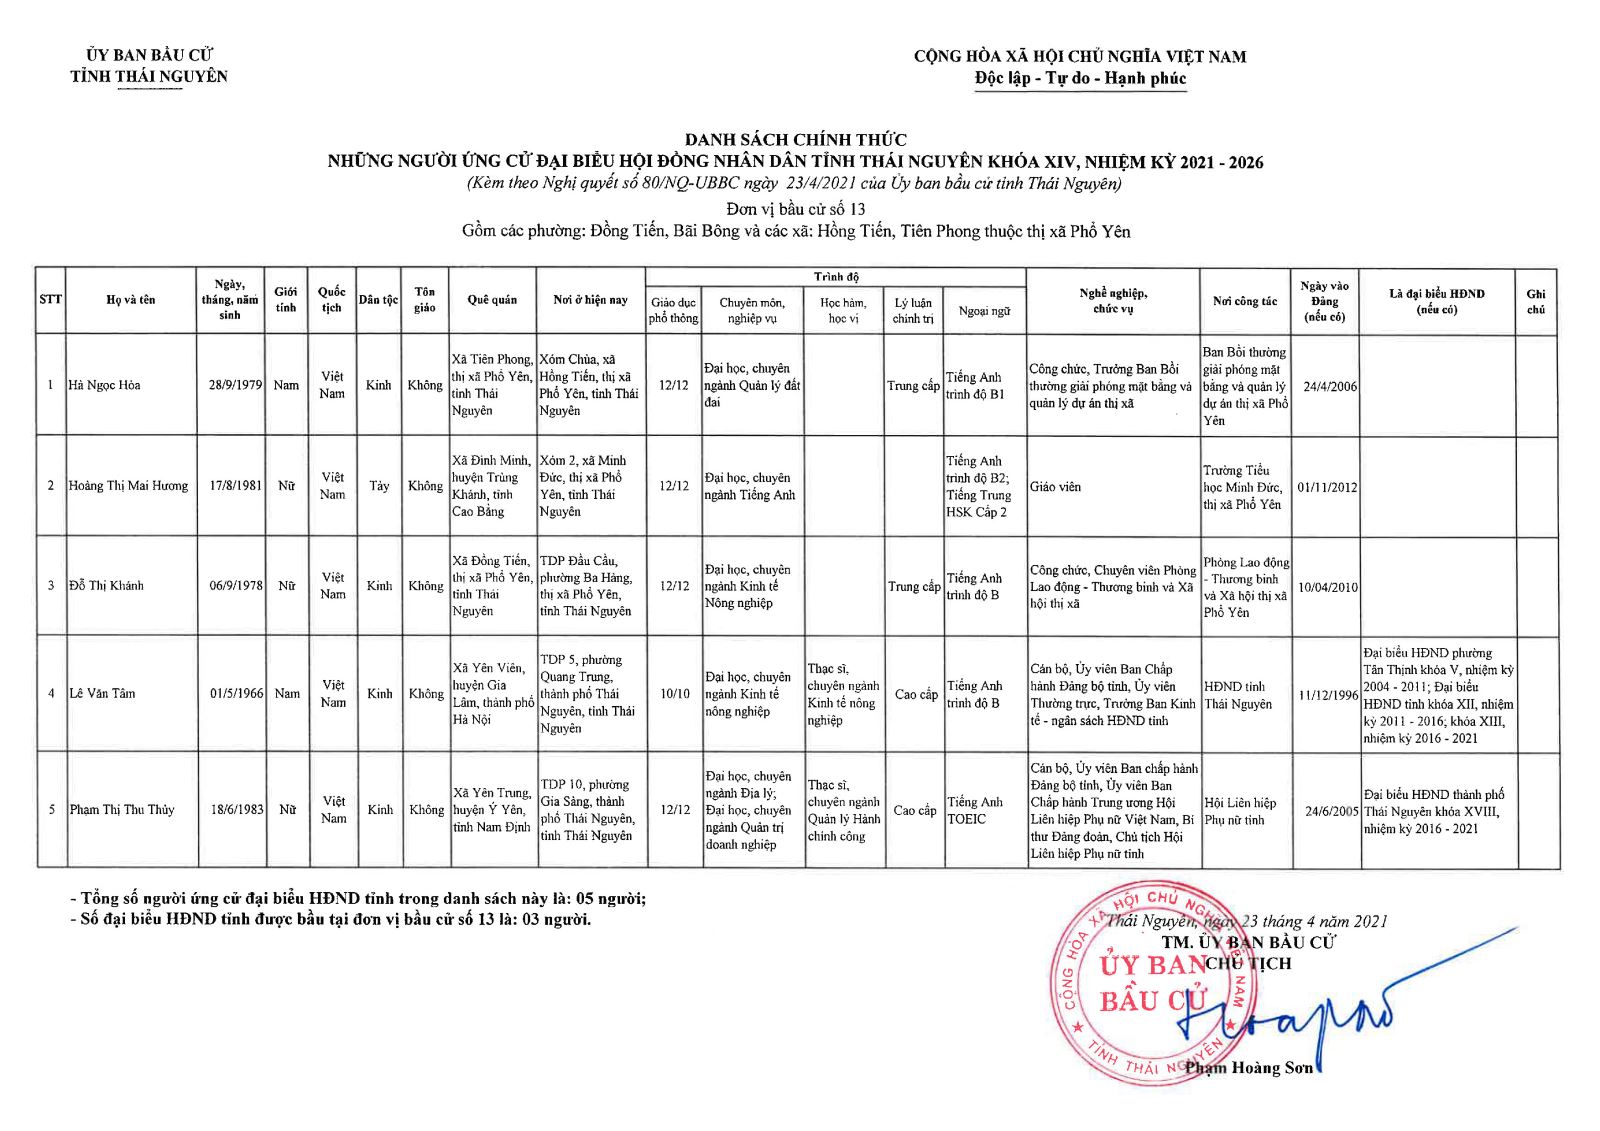 Danh sách chính thức những người ứng cử đại biểu Hội đồng nhân dân tỉnh Thái Nguyên khóa XIV, nhiệm kỳ 2021 - 2026 -3